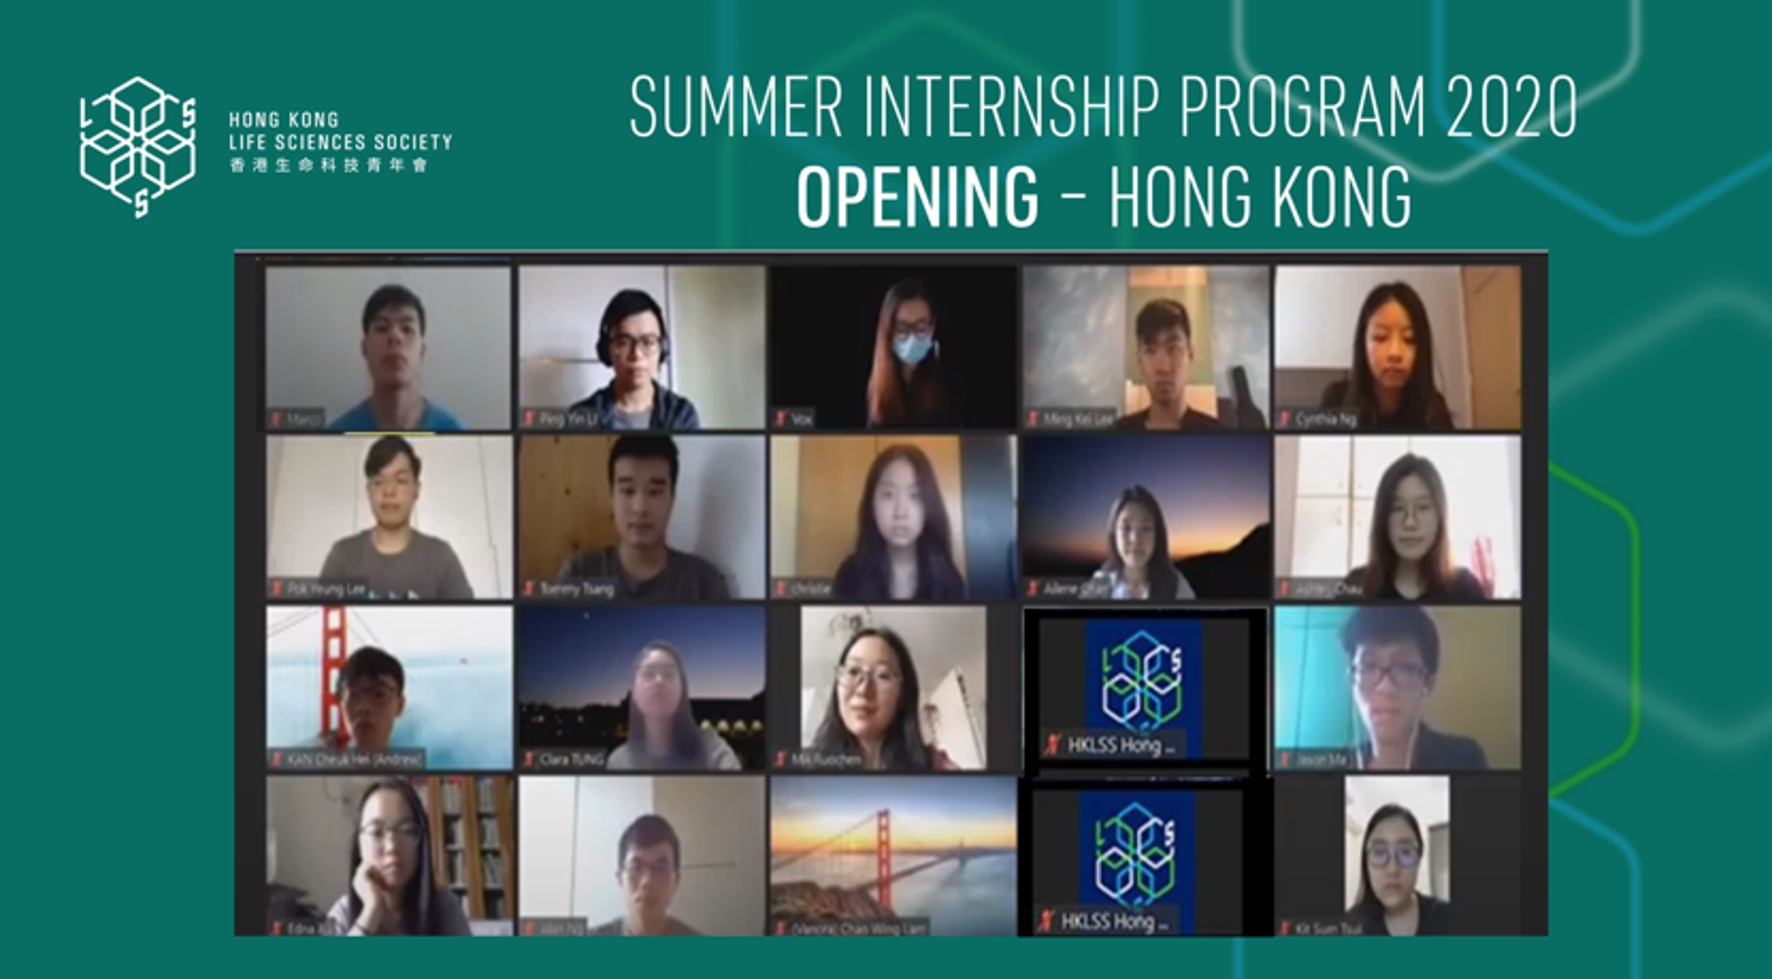 Summer Internship Program 2020 Opening